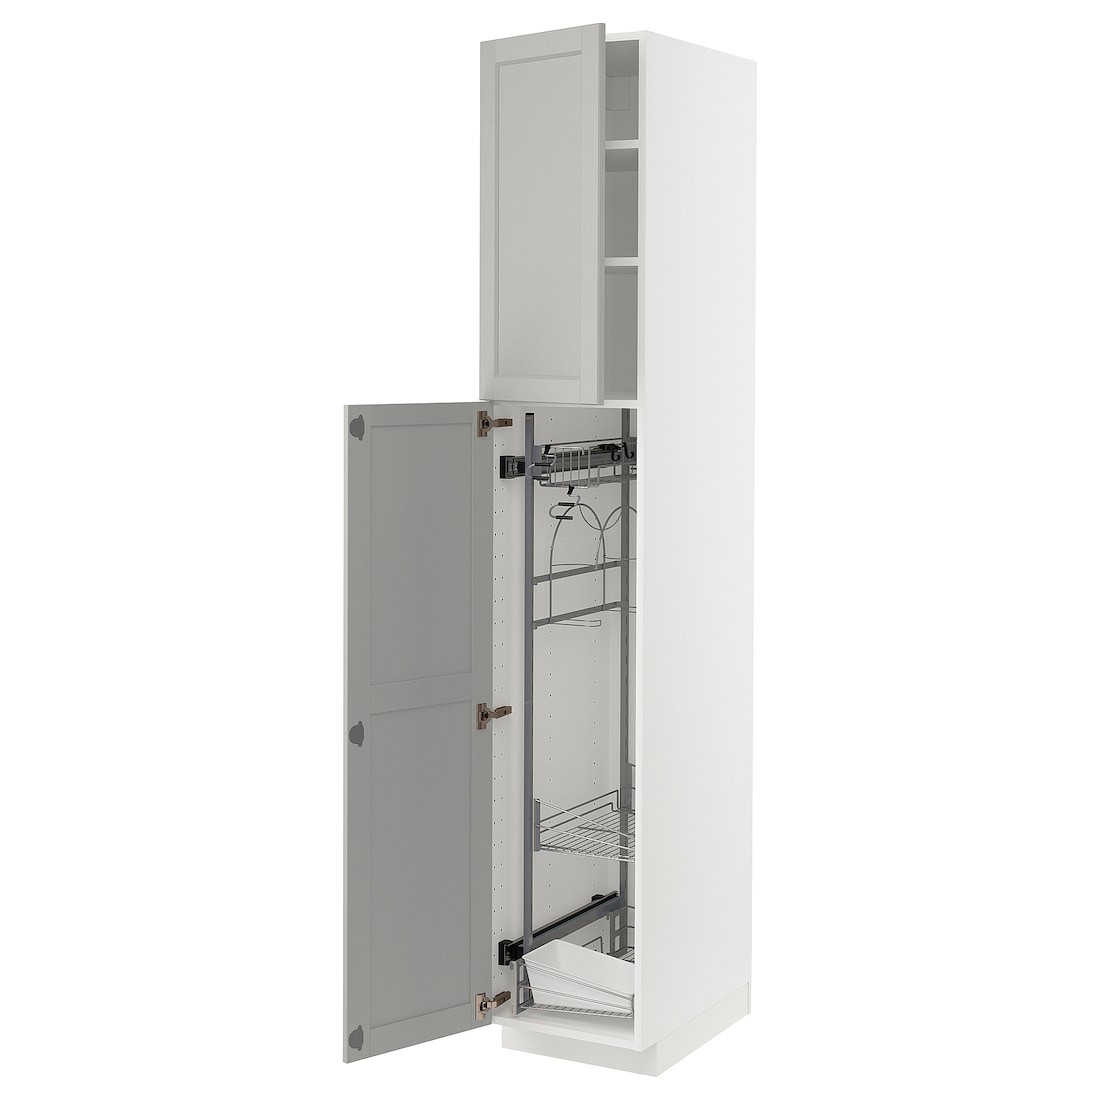 METOD МЕТОД Высокий шкаф с отделением для аксессуаров для уборки, белый / Lerhyttan светло-серый, 40x60x220 см